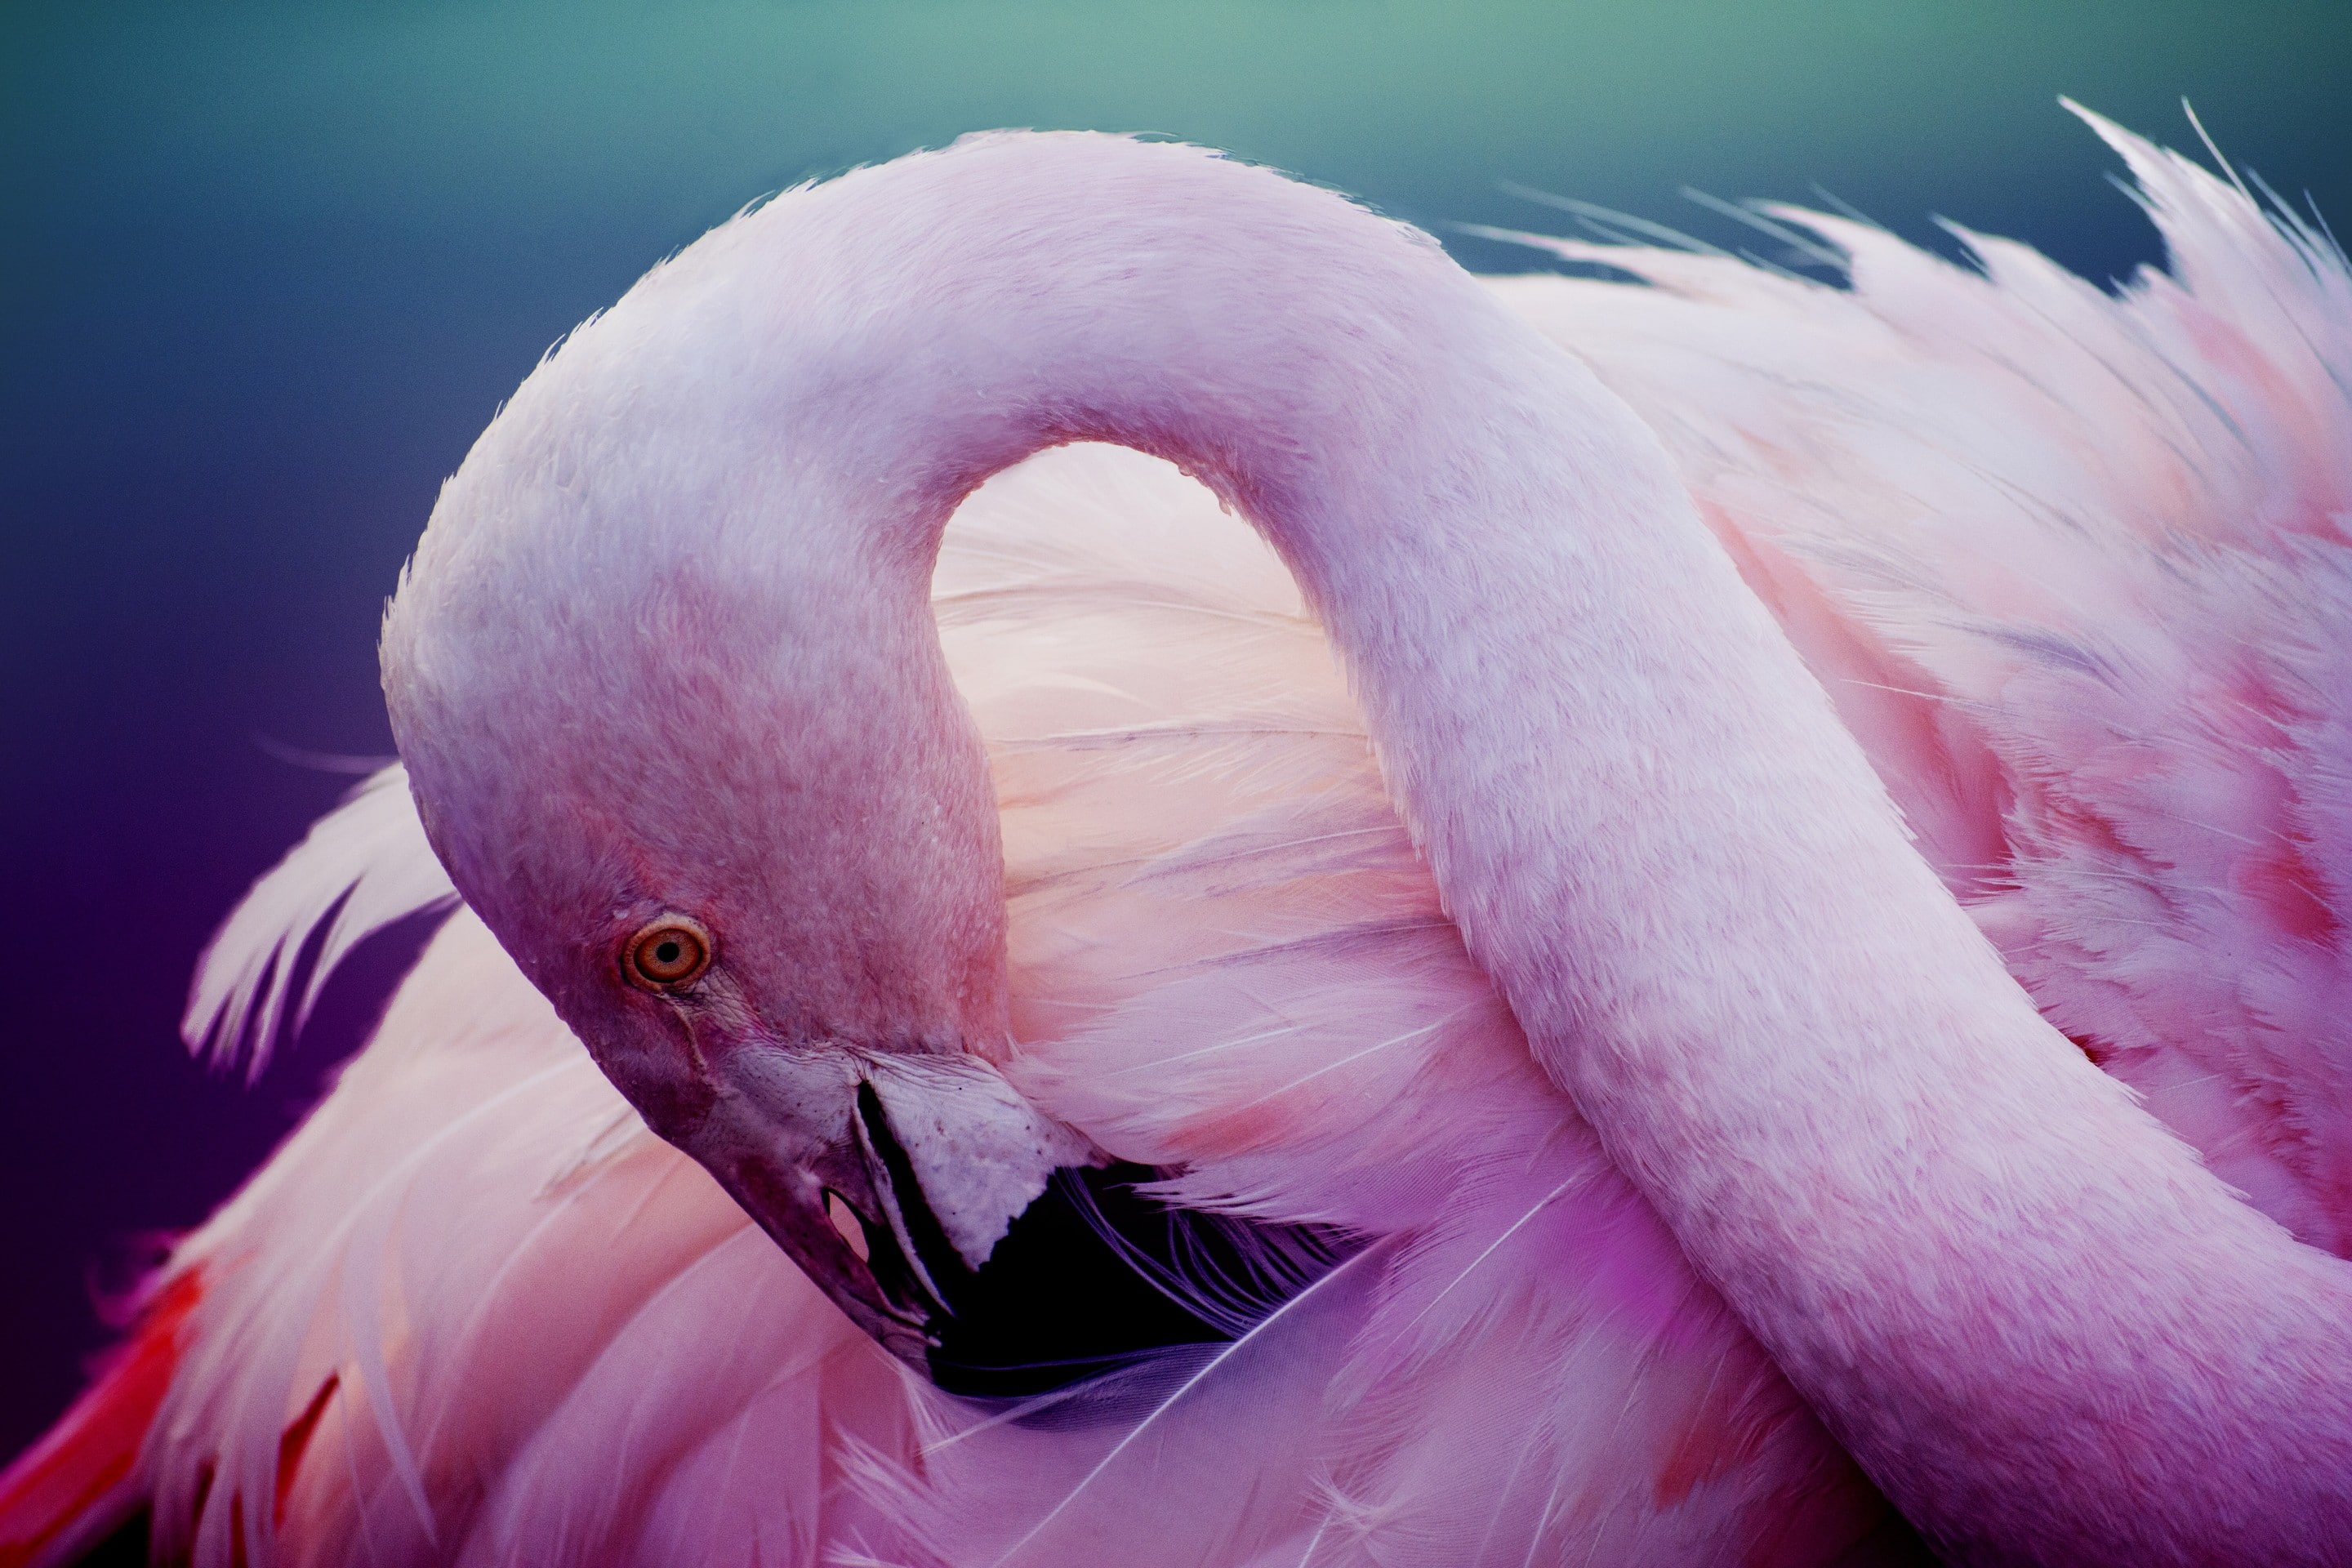 Pink flamingos, bird, feathers, neck